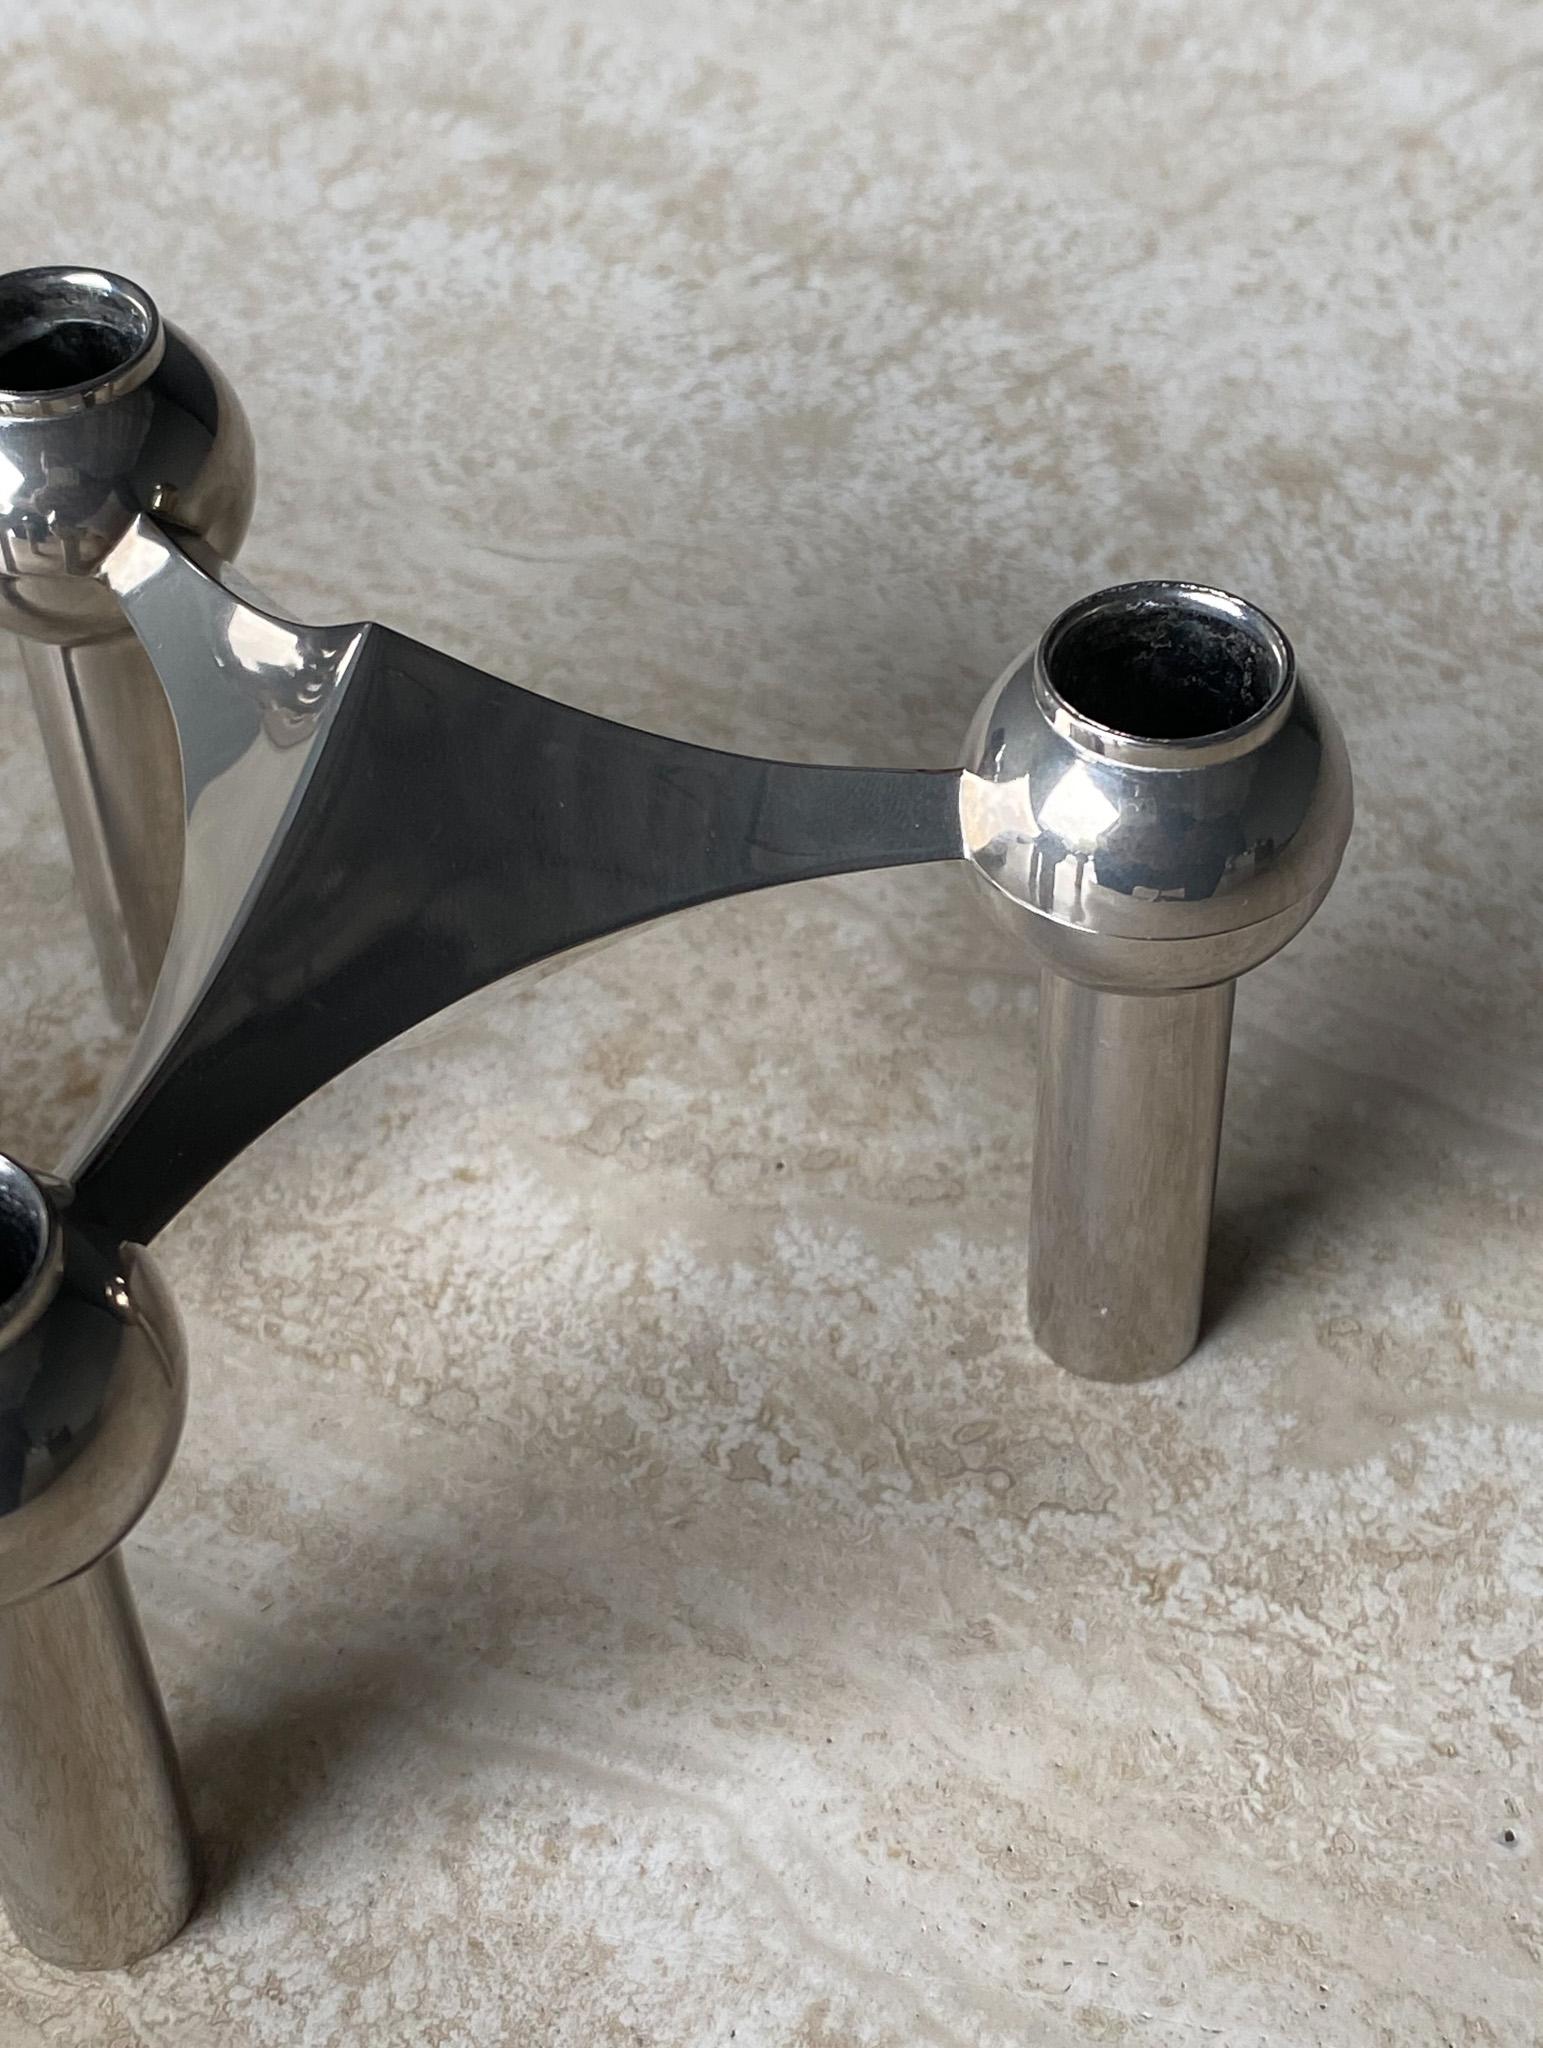 Stoff Nagel Candleholder Designed by Werner Stoff for Metalworker Hans Nagel 11